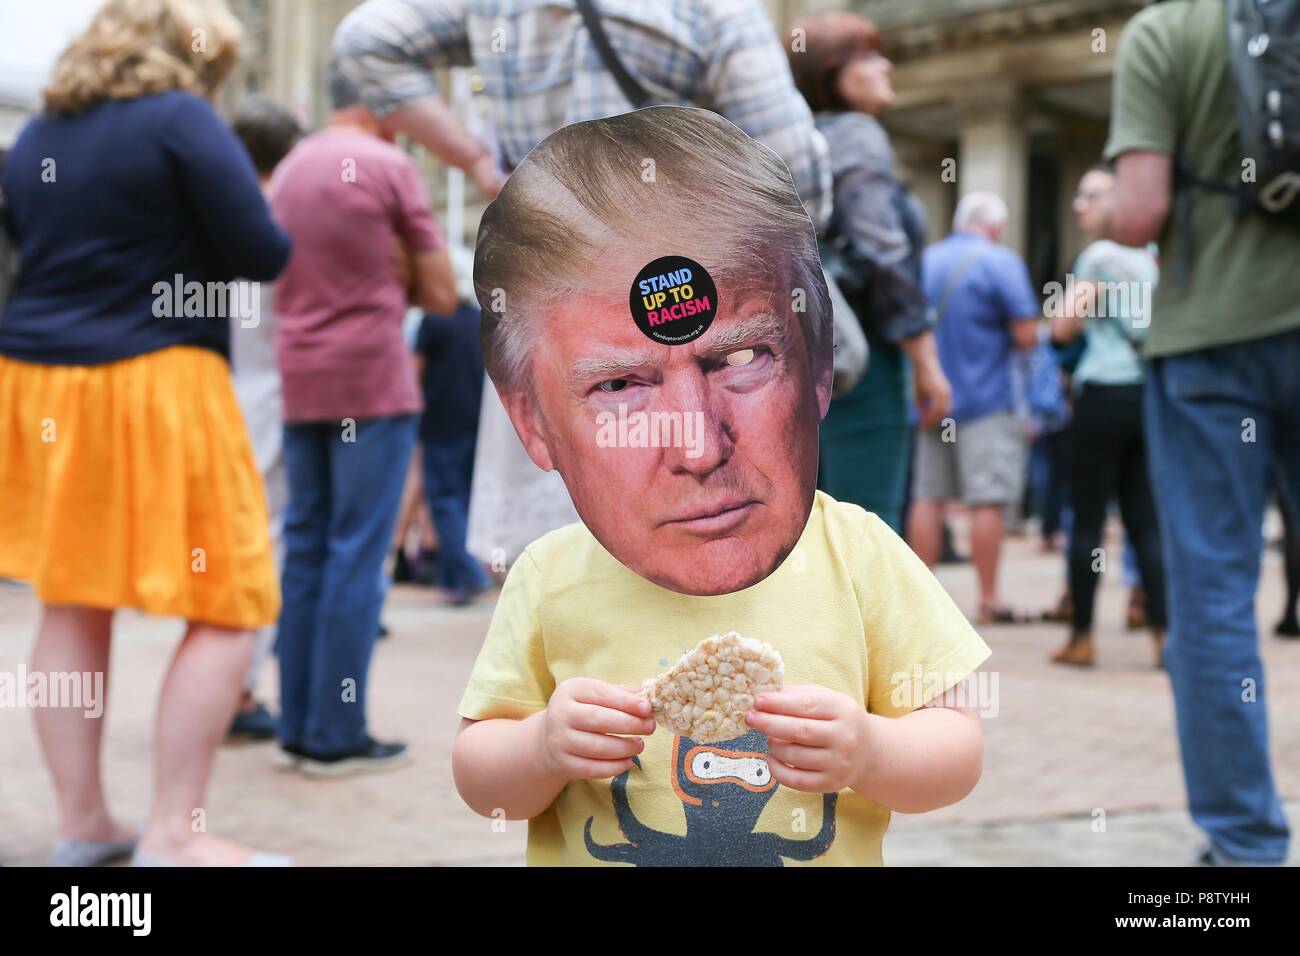 Birmingham, Großbritannien. 13. Juli 2018. Anti Trump Demonstration, Kind trägt einen Trumpf Maske, Victoria Square, Birmingham. Peter Lopeman/Alamy leben Nachrichten Stockfoto